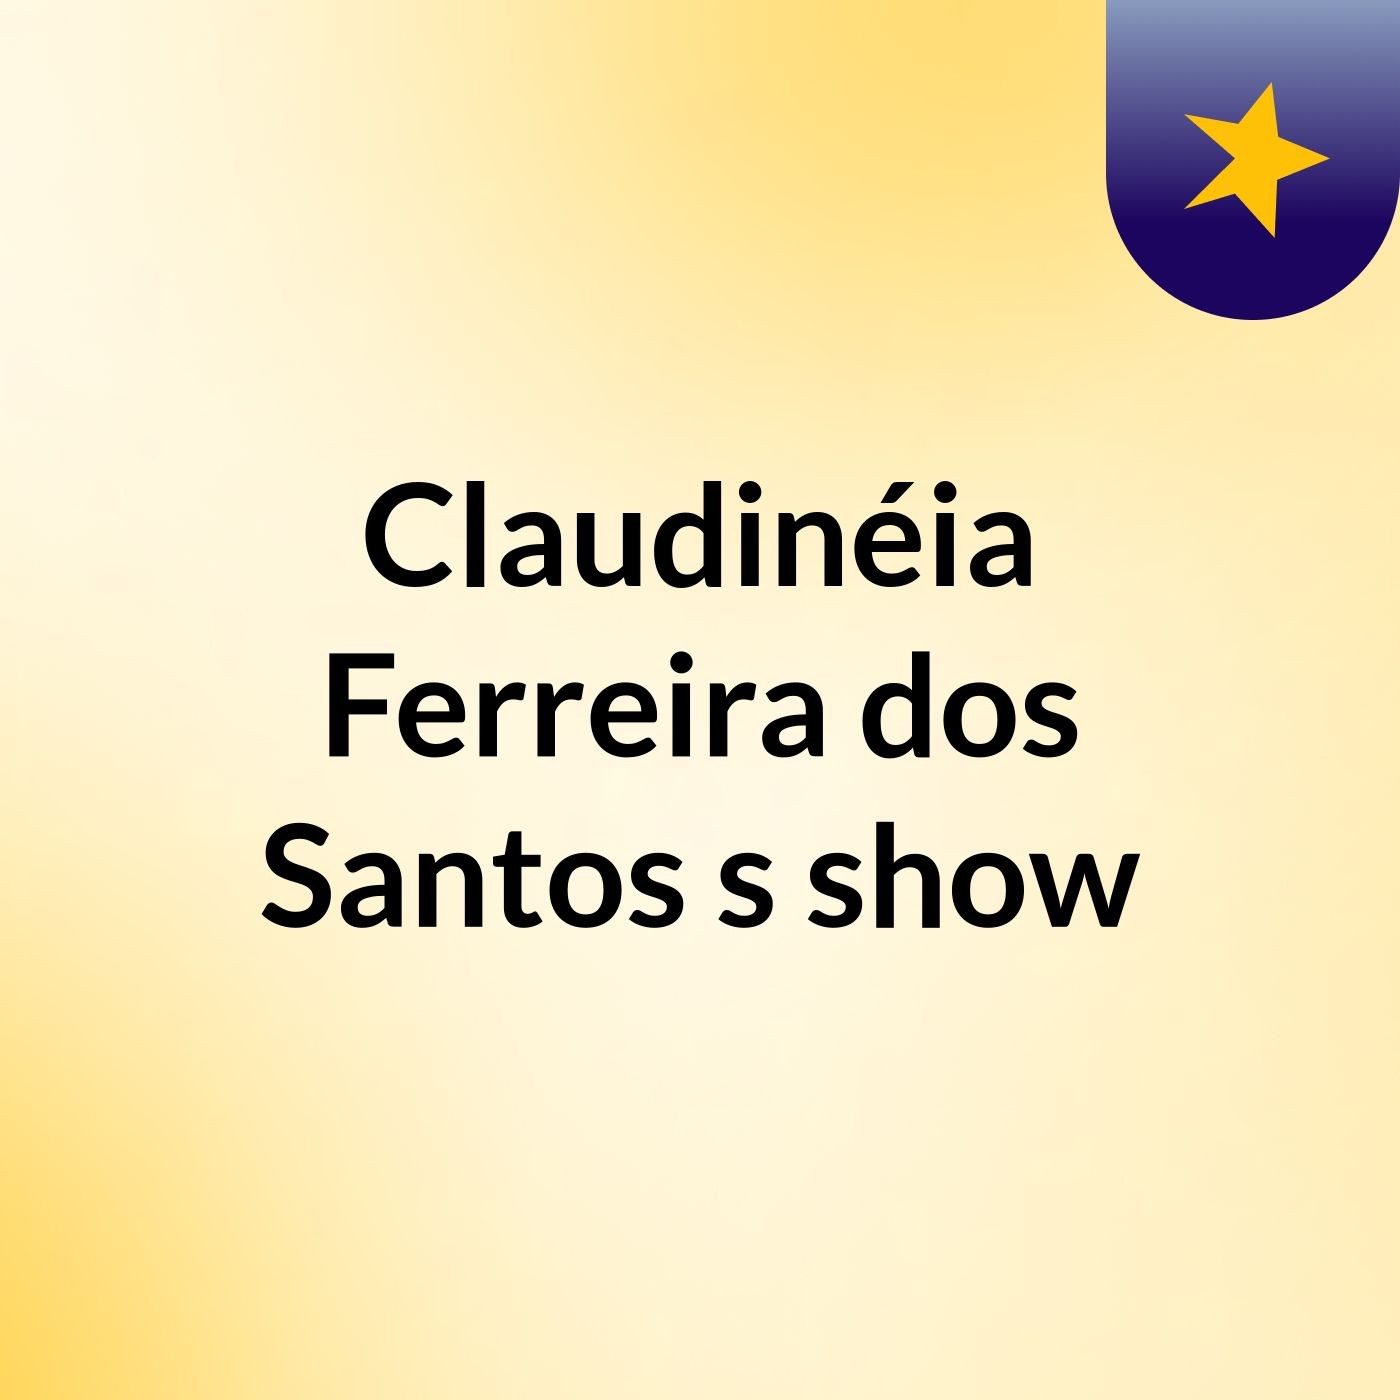 Claudinéia Ferreira dos Santos's show